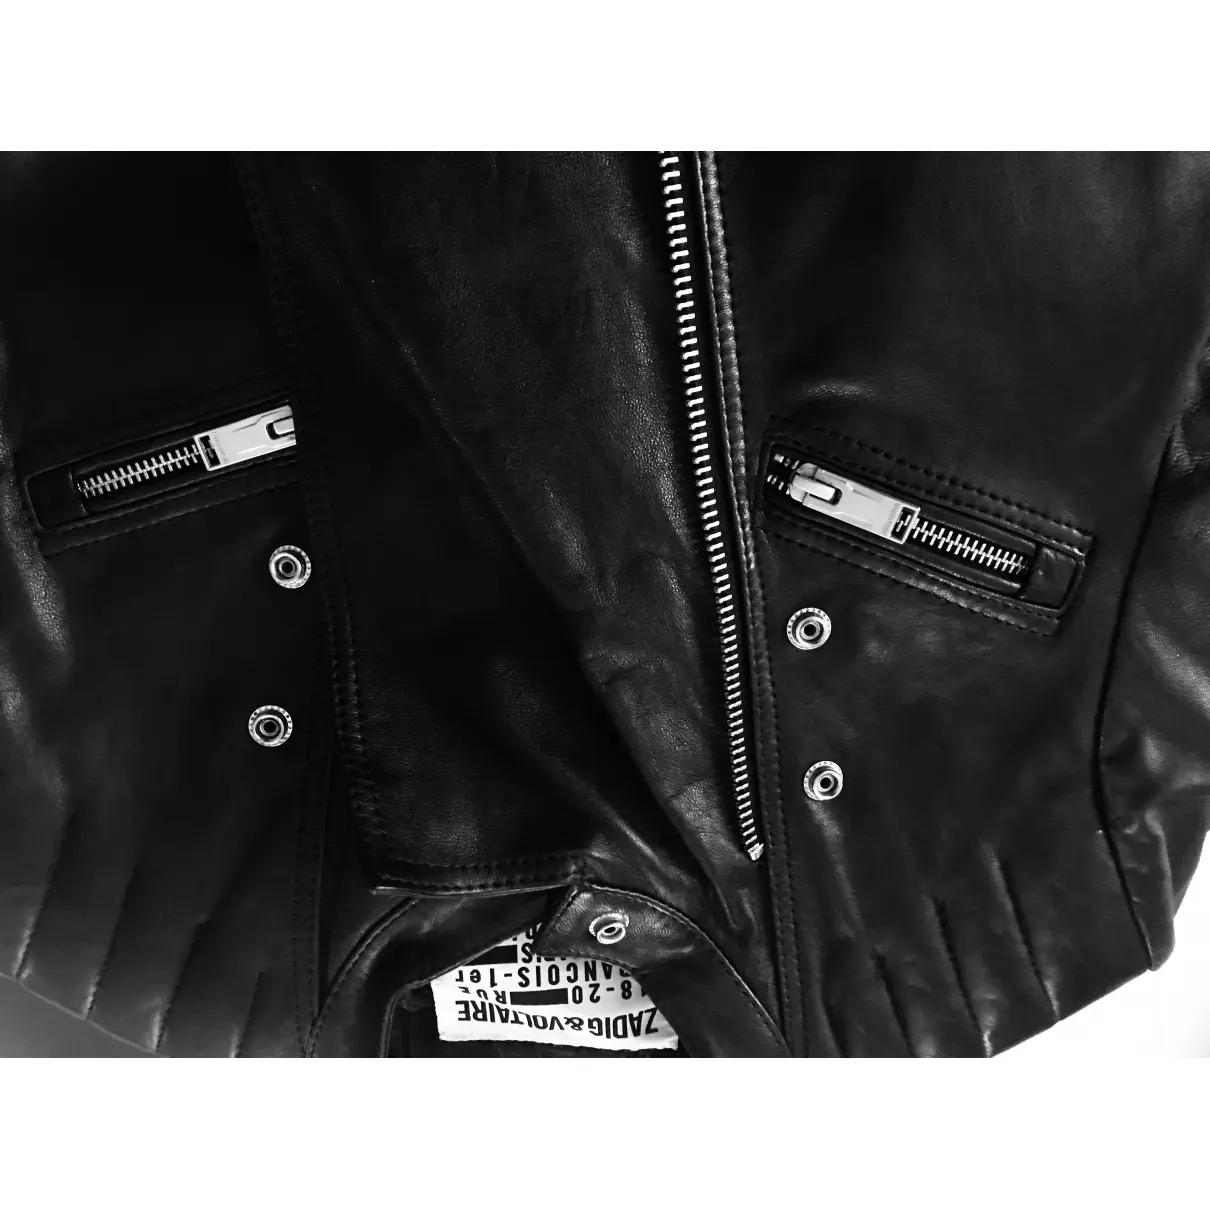 Leather jacket Zadig & Voltaire